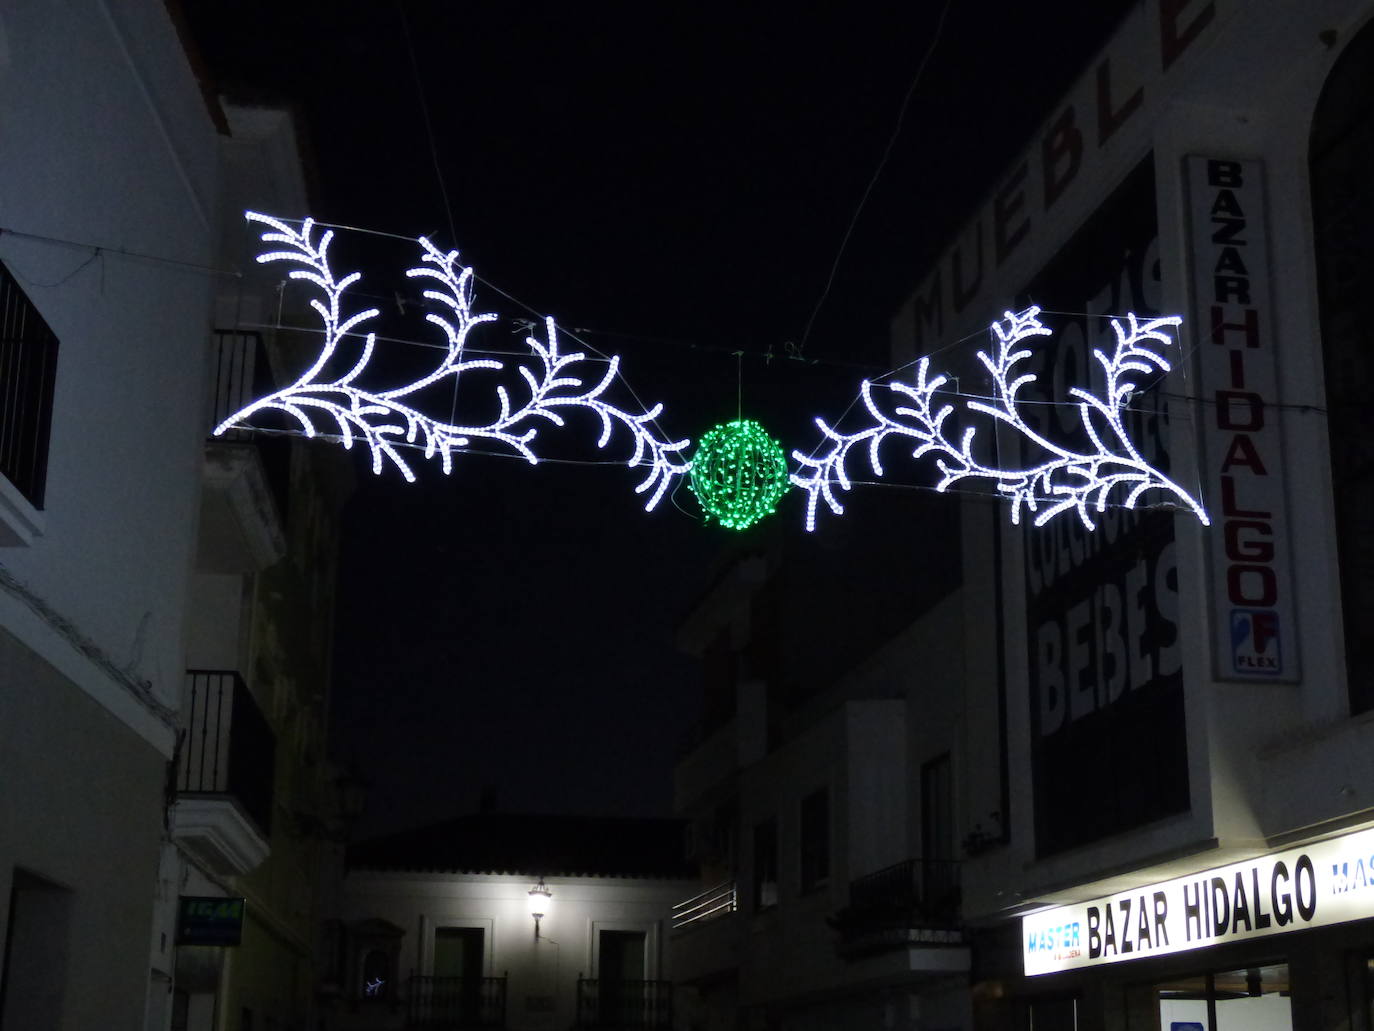 Castuera recibirá a la Navidad con el tradicional encendido de luces